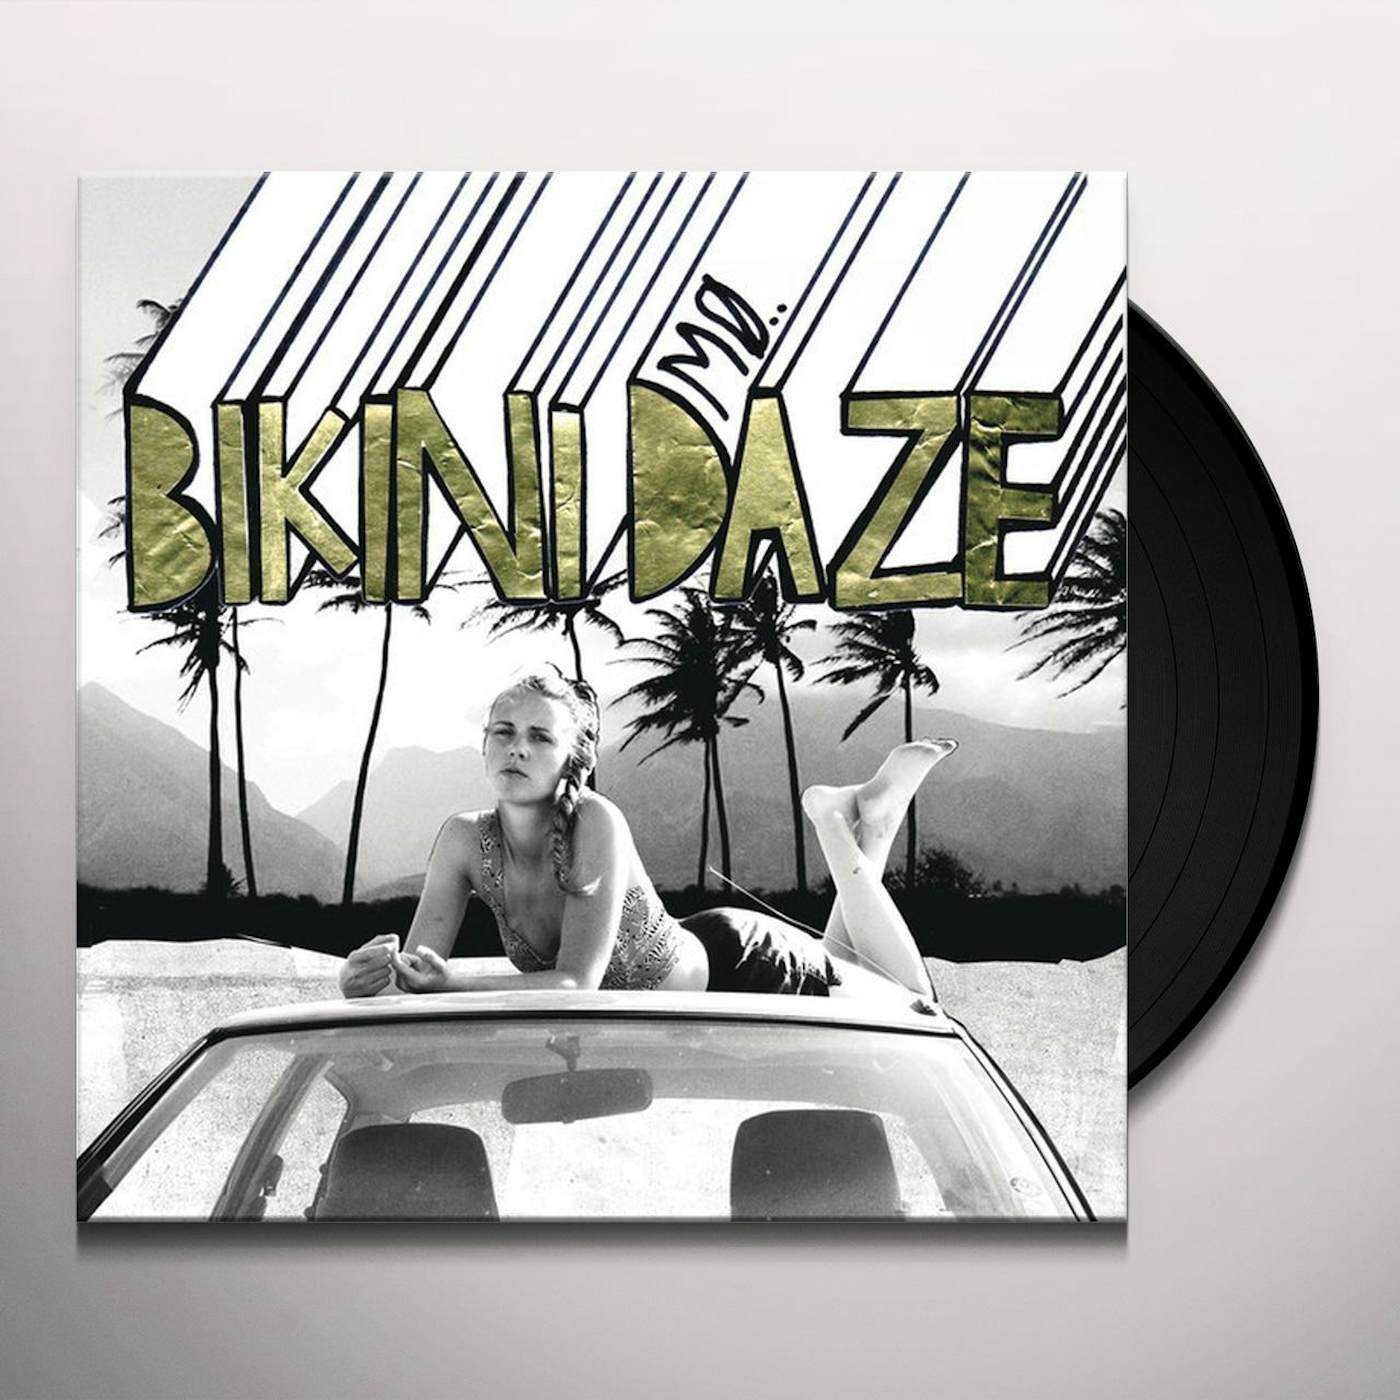 MØ BIKINI DAZE (UK) (Vinyl)